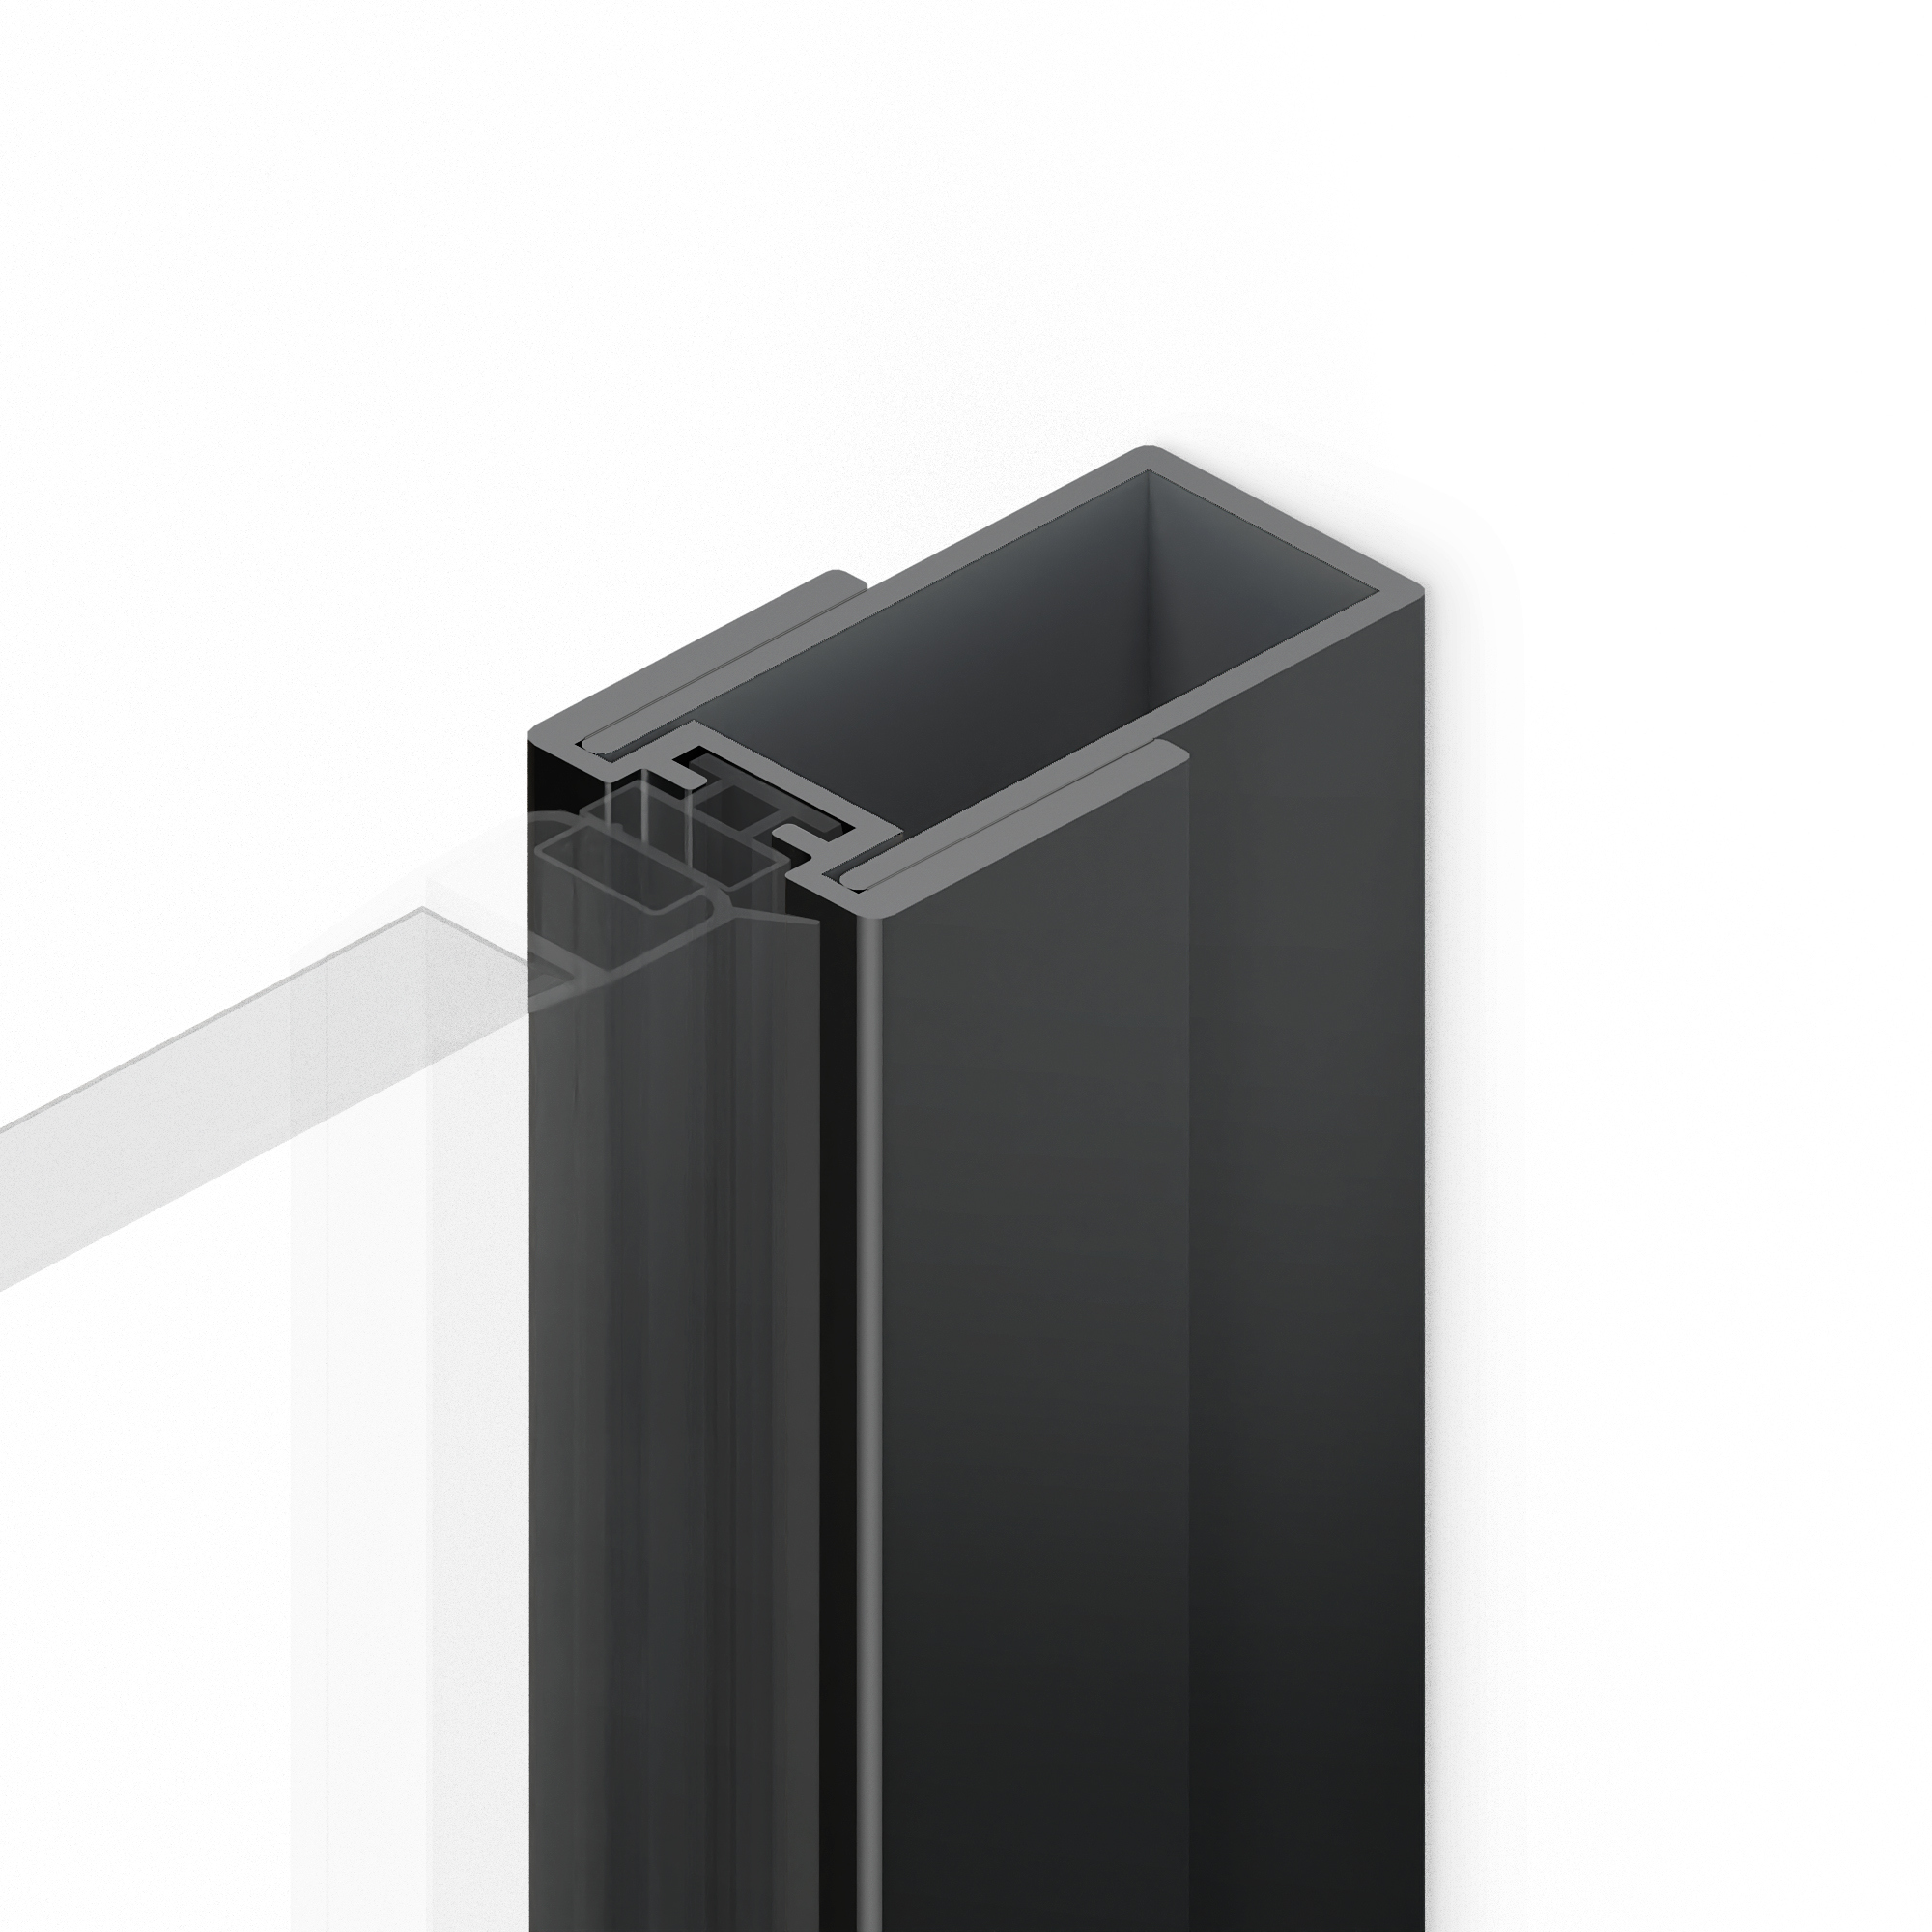 Profil poszerzający do drzwi wnękowych kolekcji Smart Black, Softi Black, Reflexa Black – po stronie uszczelki magnetycznej